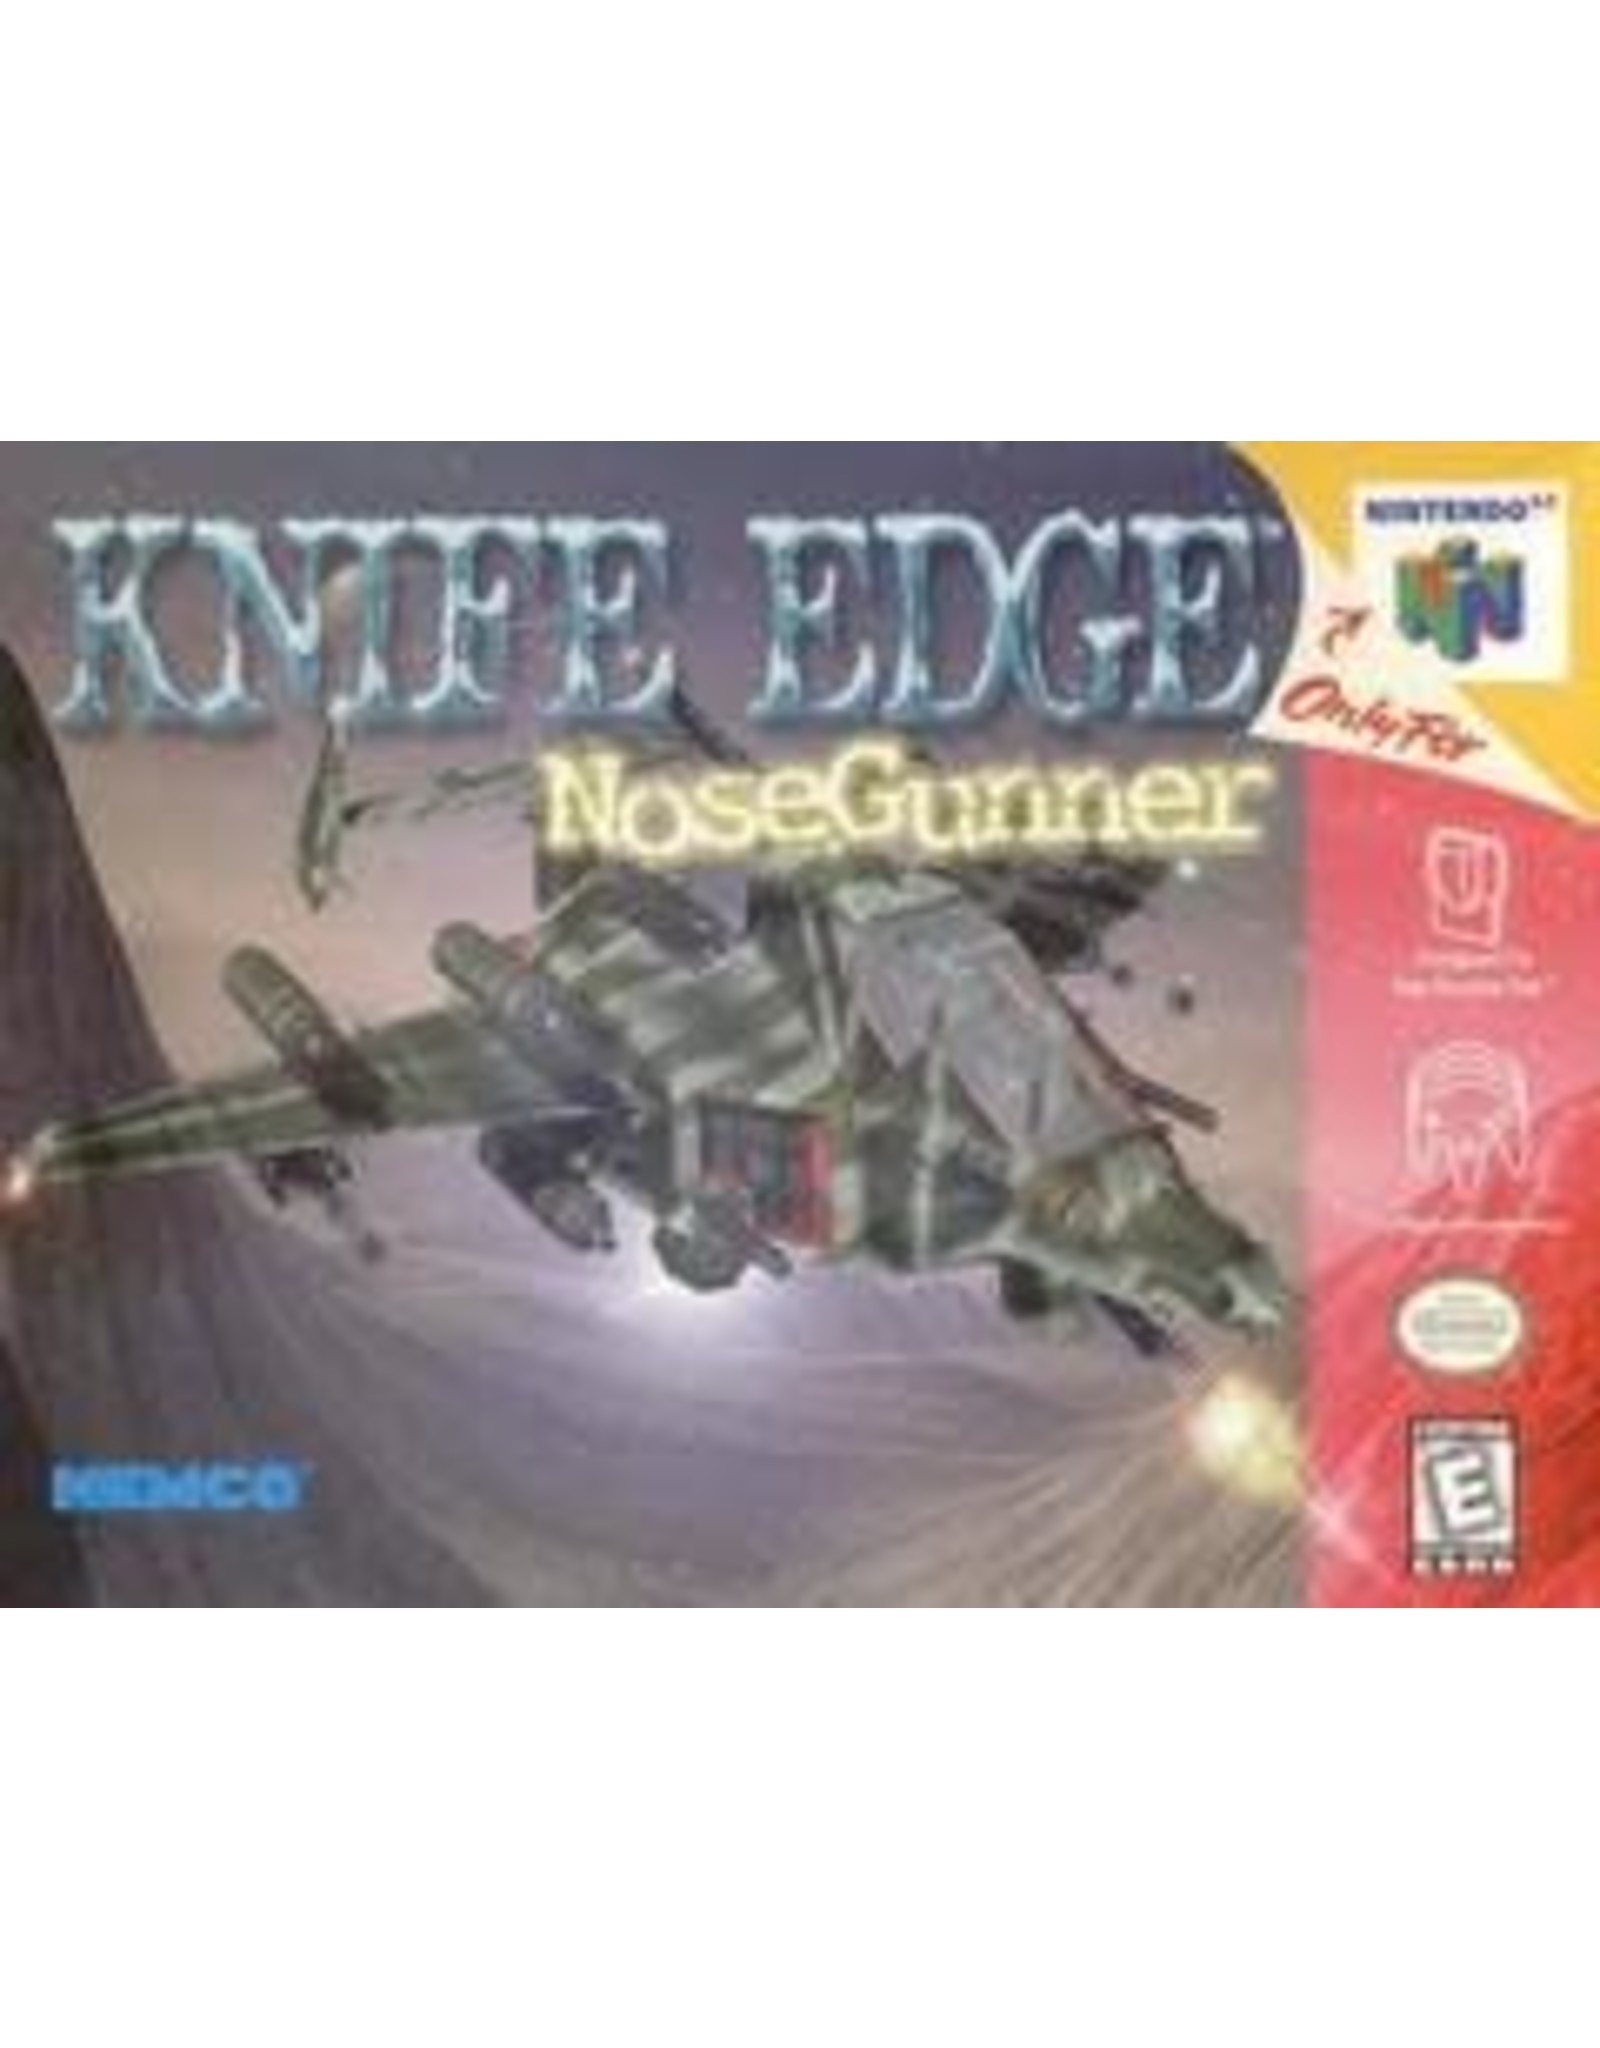 Nintendo 64 Knife Edge Nose Gunner (Cart Only)